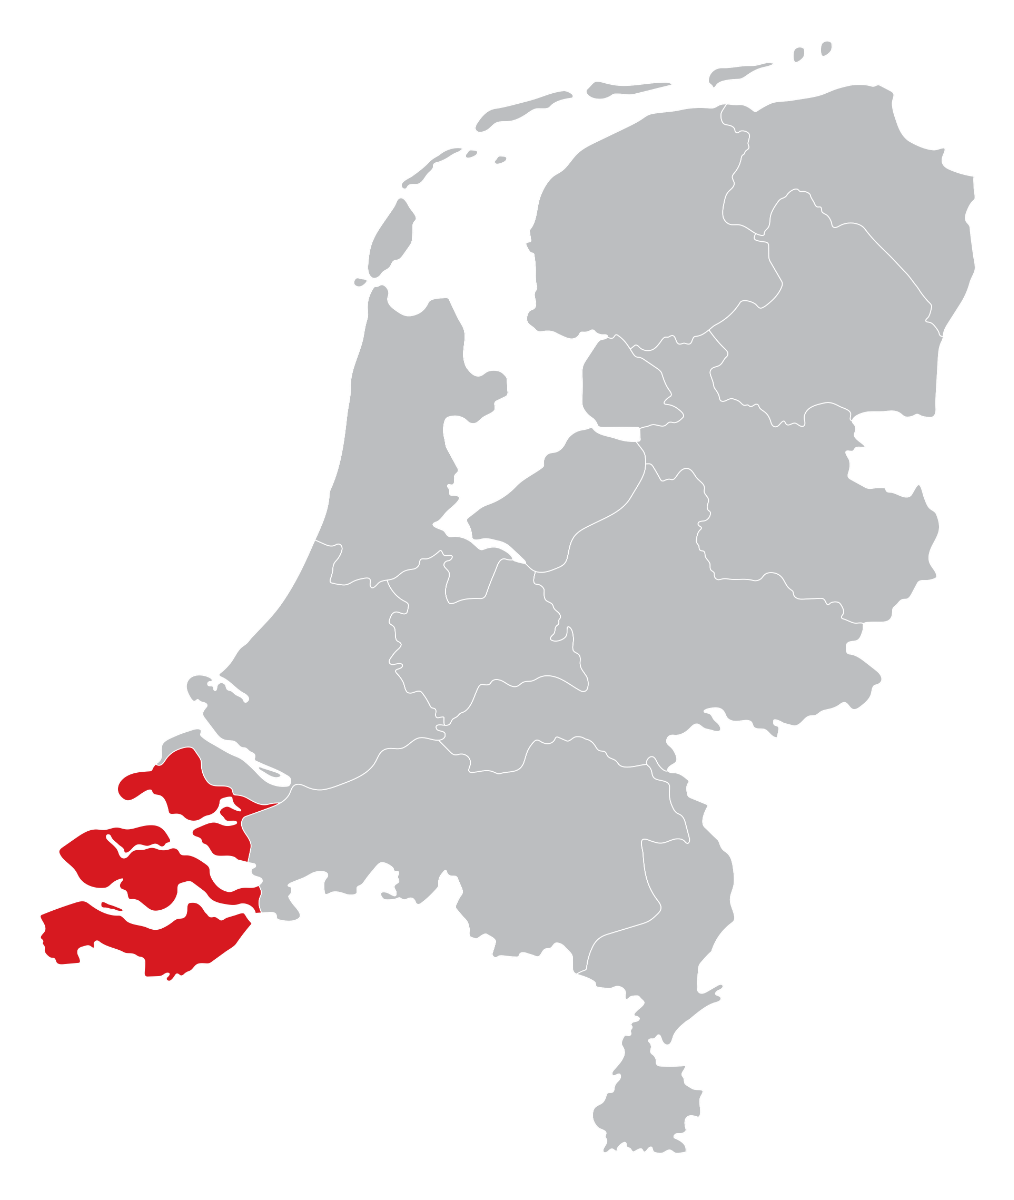 Dealers kaart in de provincie Zeeland, Middelburg, Goes, Vlissingen, Terneuzen of Zierikzee